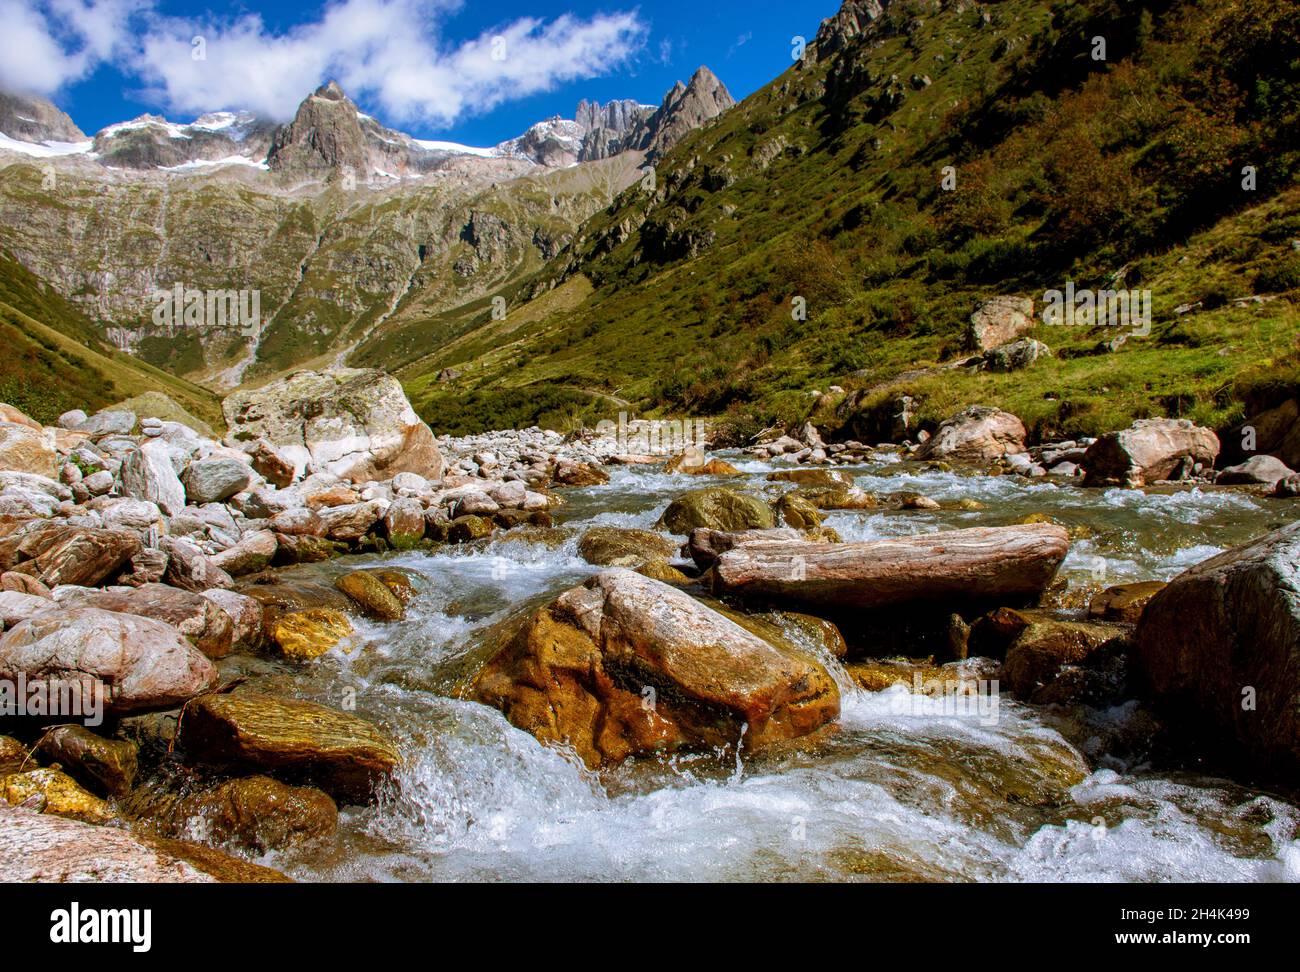 Rapids flowing through mountain valley in autumn, Gorezmettlen, Wassen, Switzerland Stock Photo